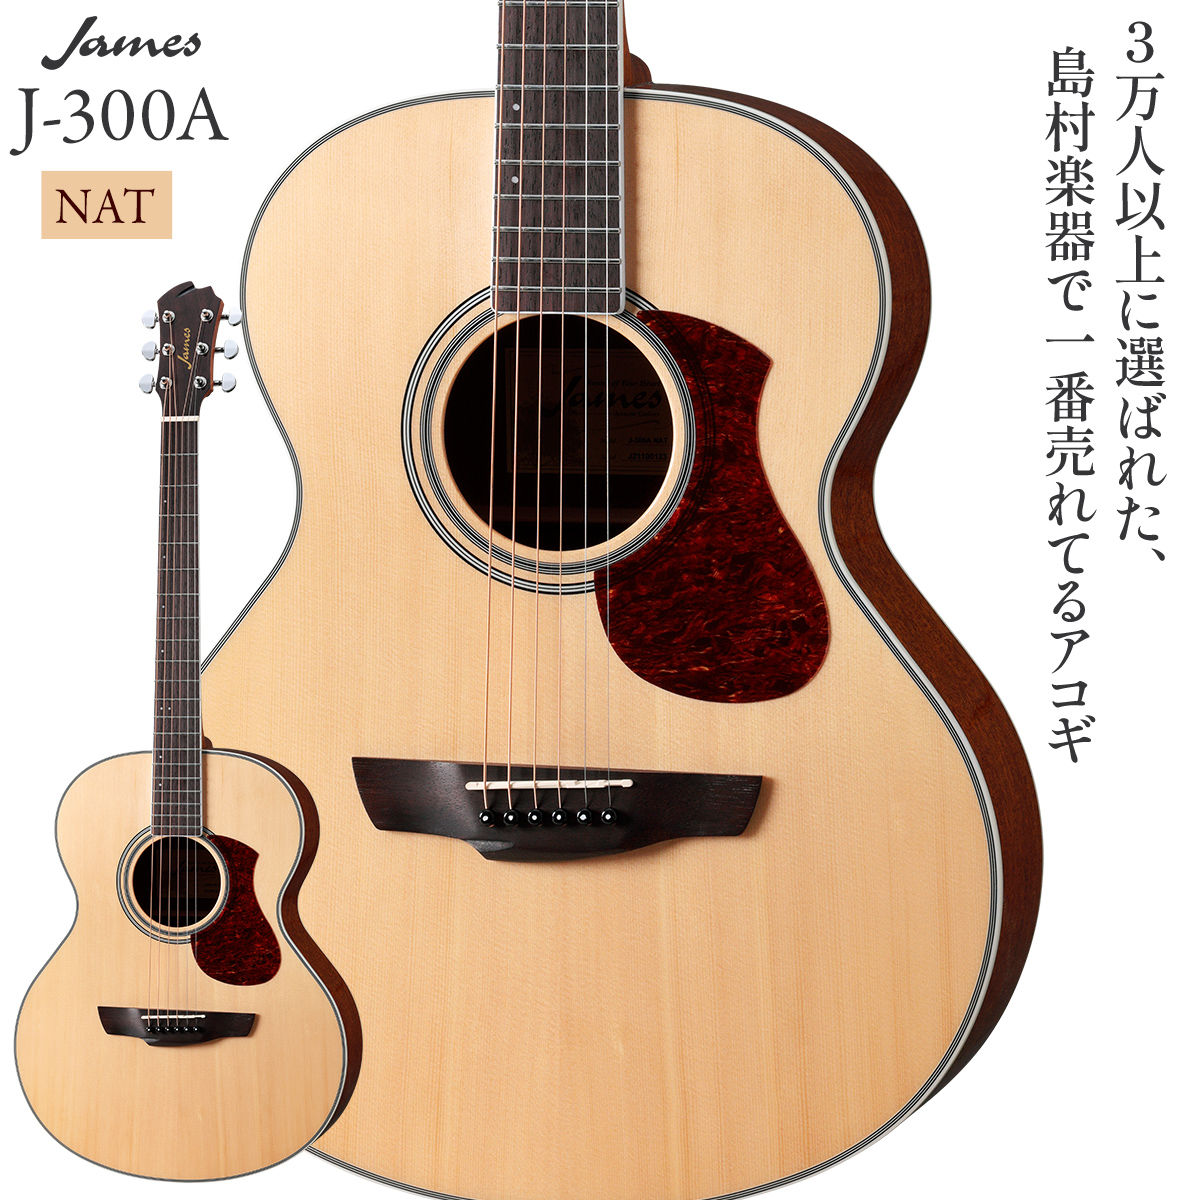 James J-300A NAT(ナチュラル) アコースティックギター 【ジェームス J300A】